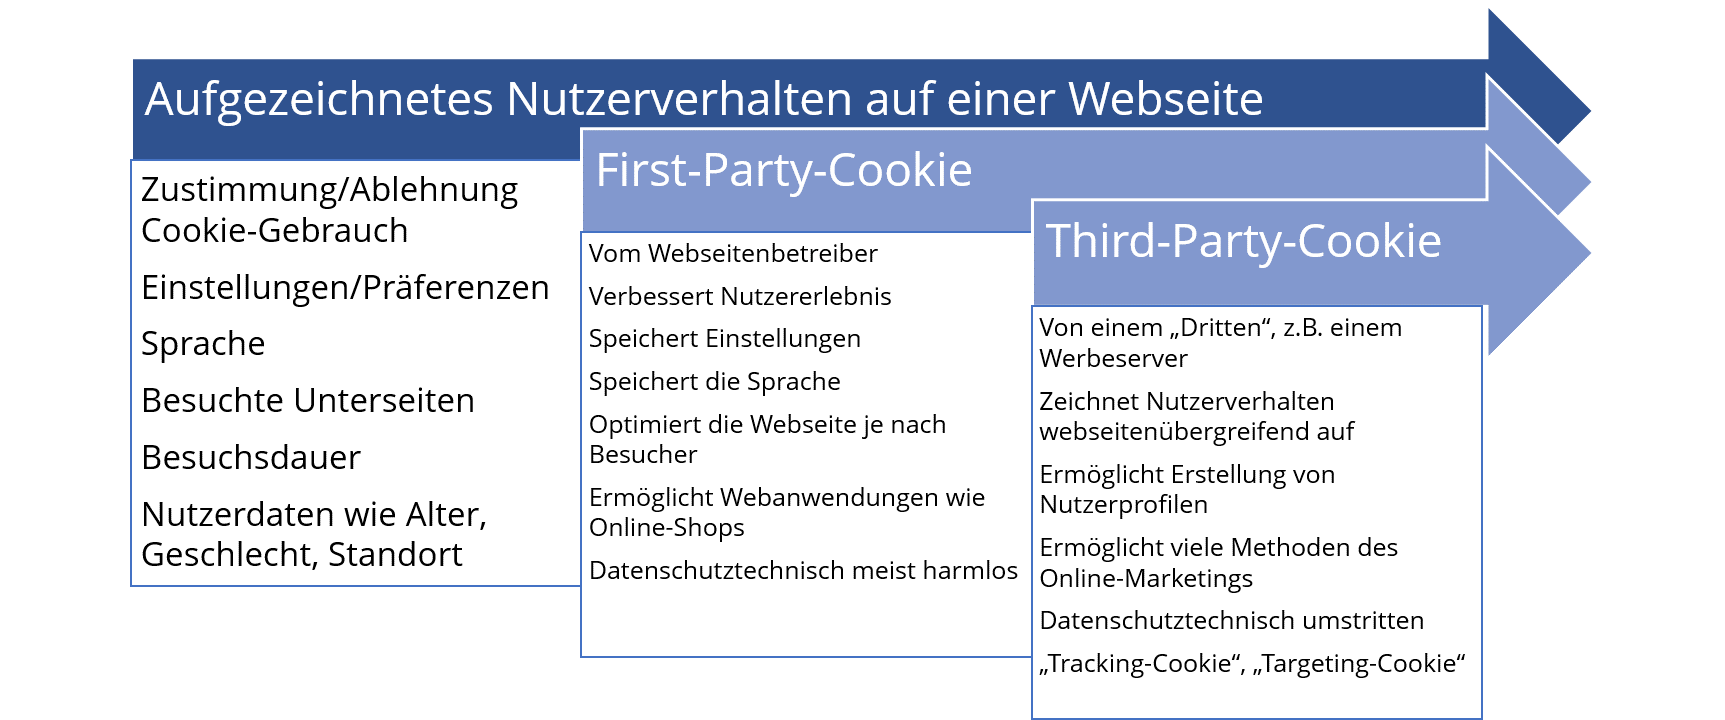 Vergleich zwischen First-Party-Cookie und Third-Party-Cookie.